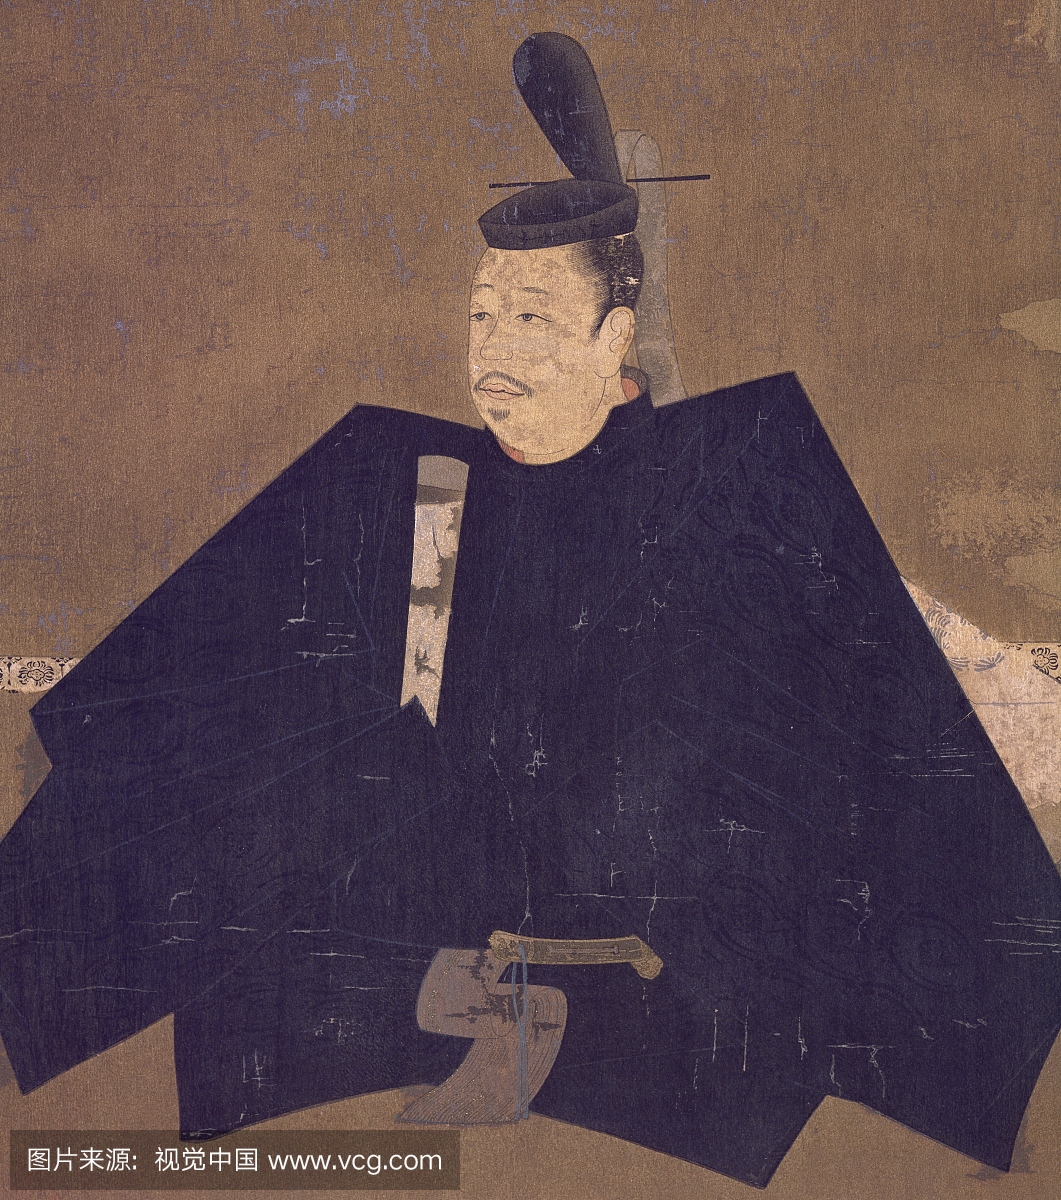 日本文明,镰仓时代(1185-1333)部长田里一志贺